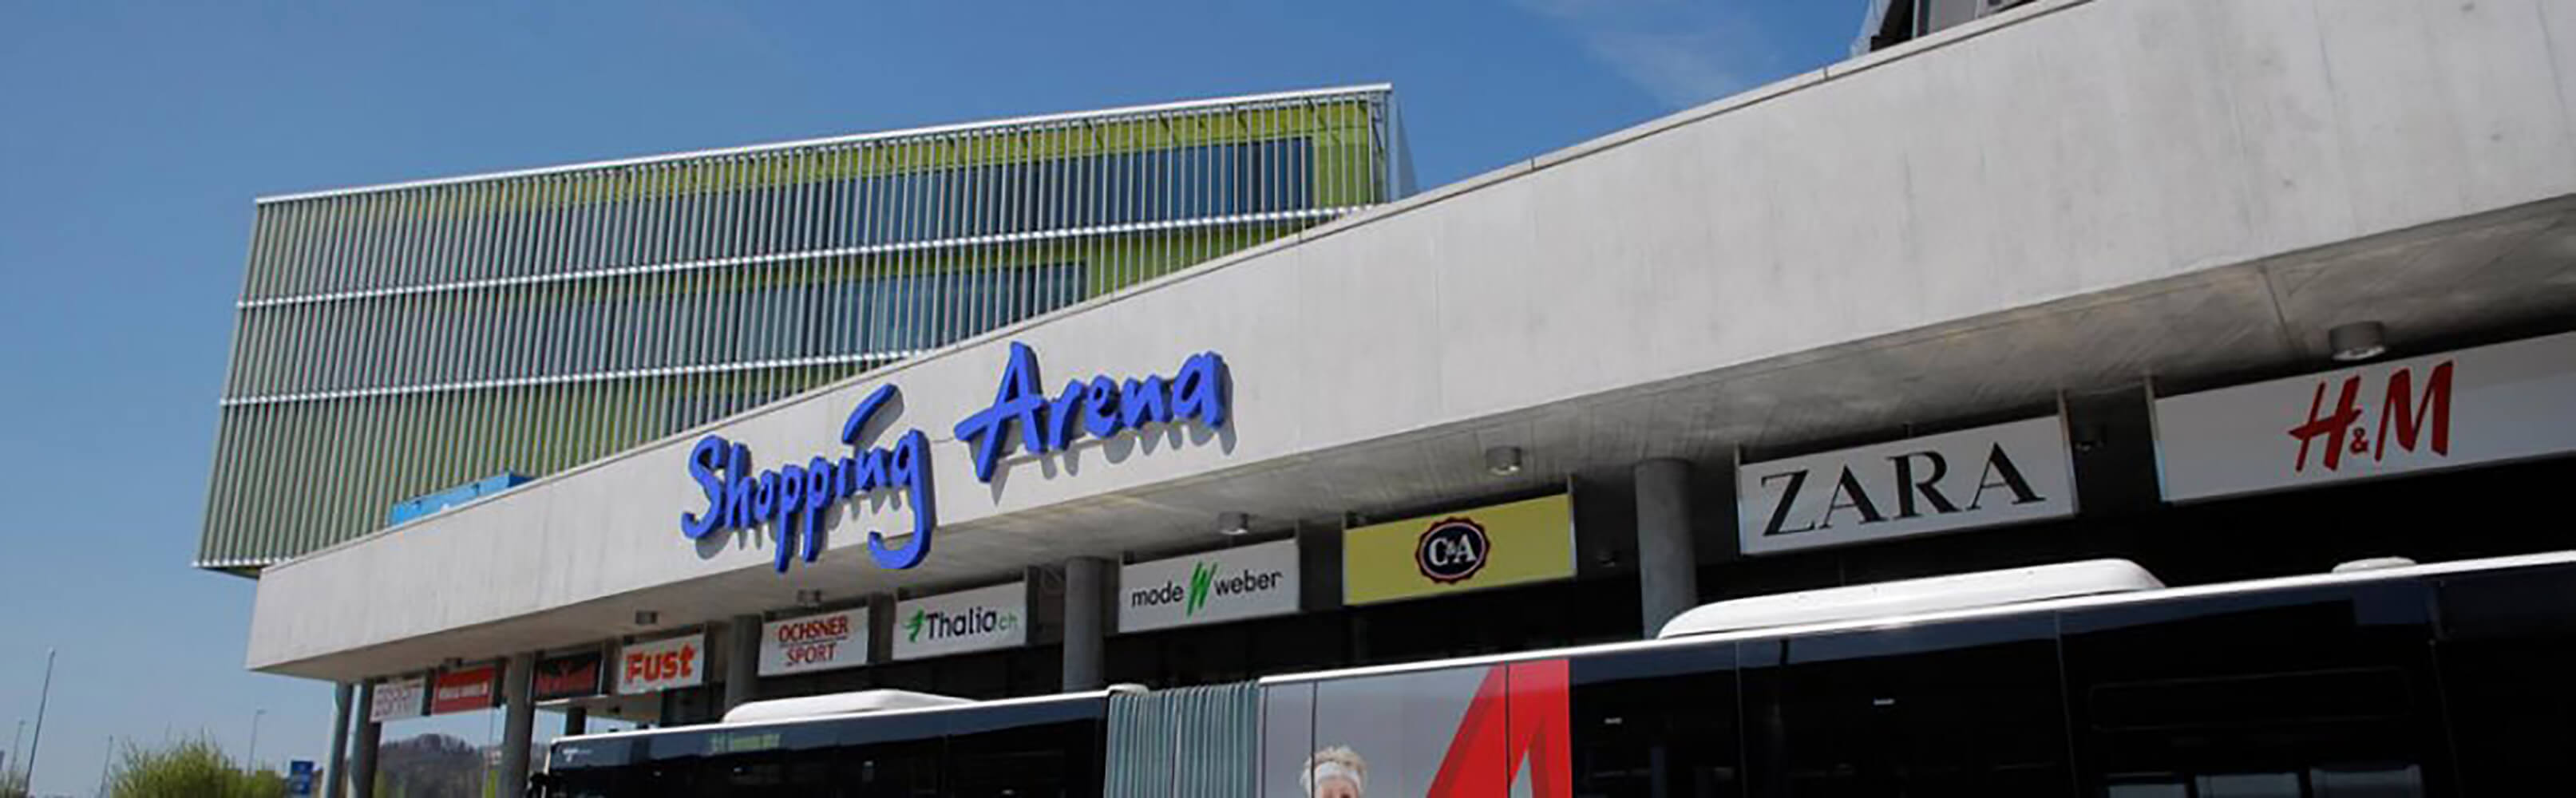 Shopping Arena St.Gallen 1